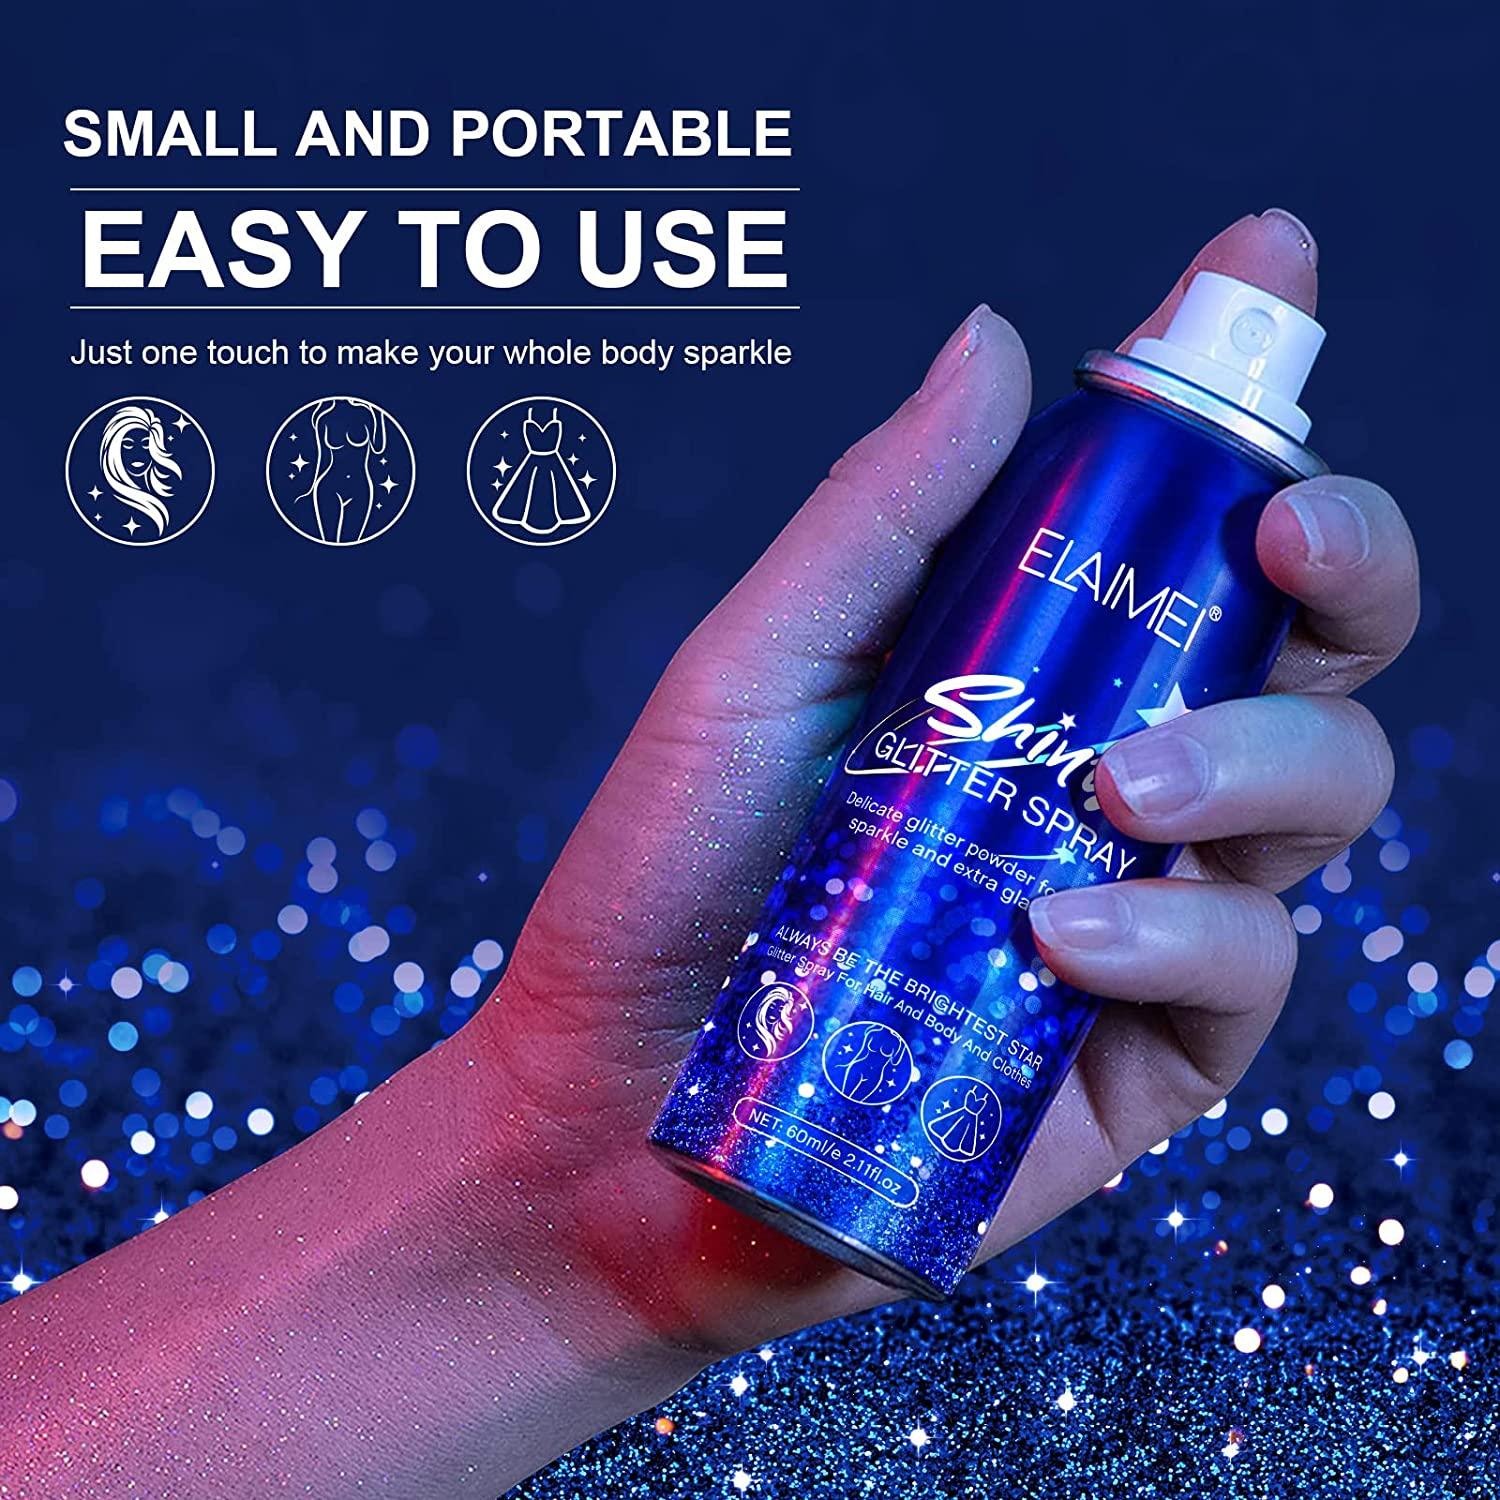 Shiny Glitter Spray, Body Glitter Spray, Hair Glitter Spray, Glitter Spray  for Hair and Body (2.11 oz) 